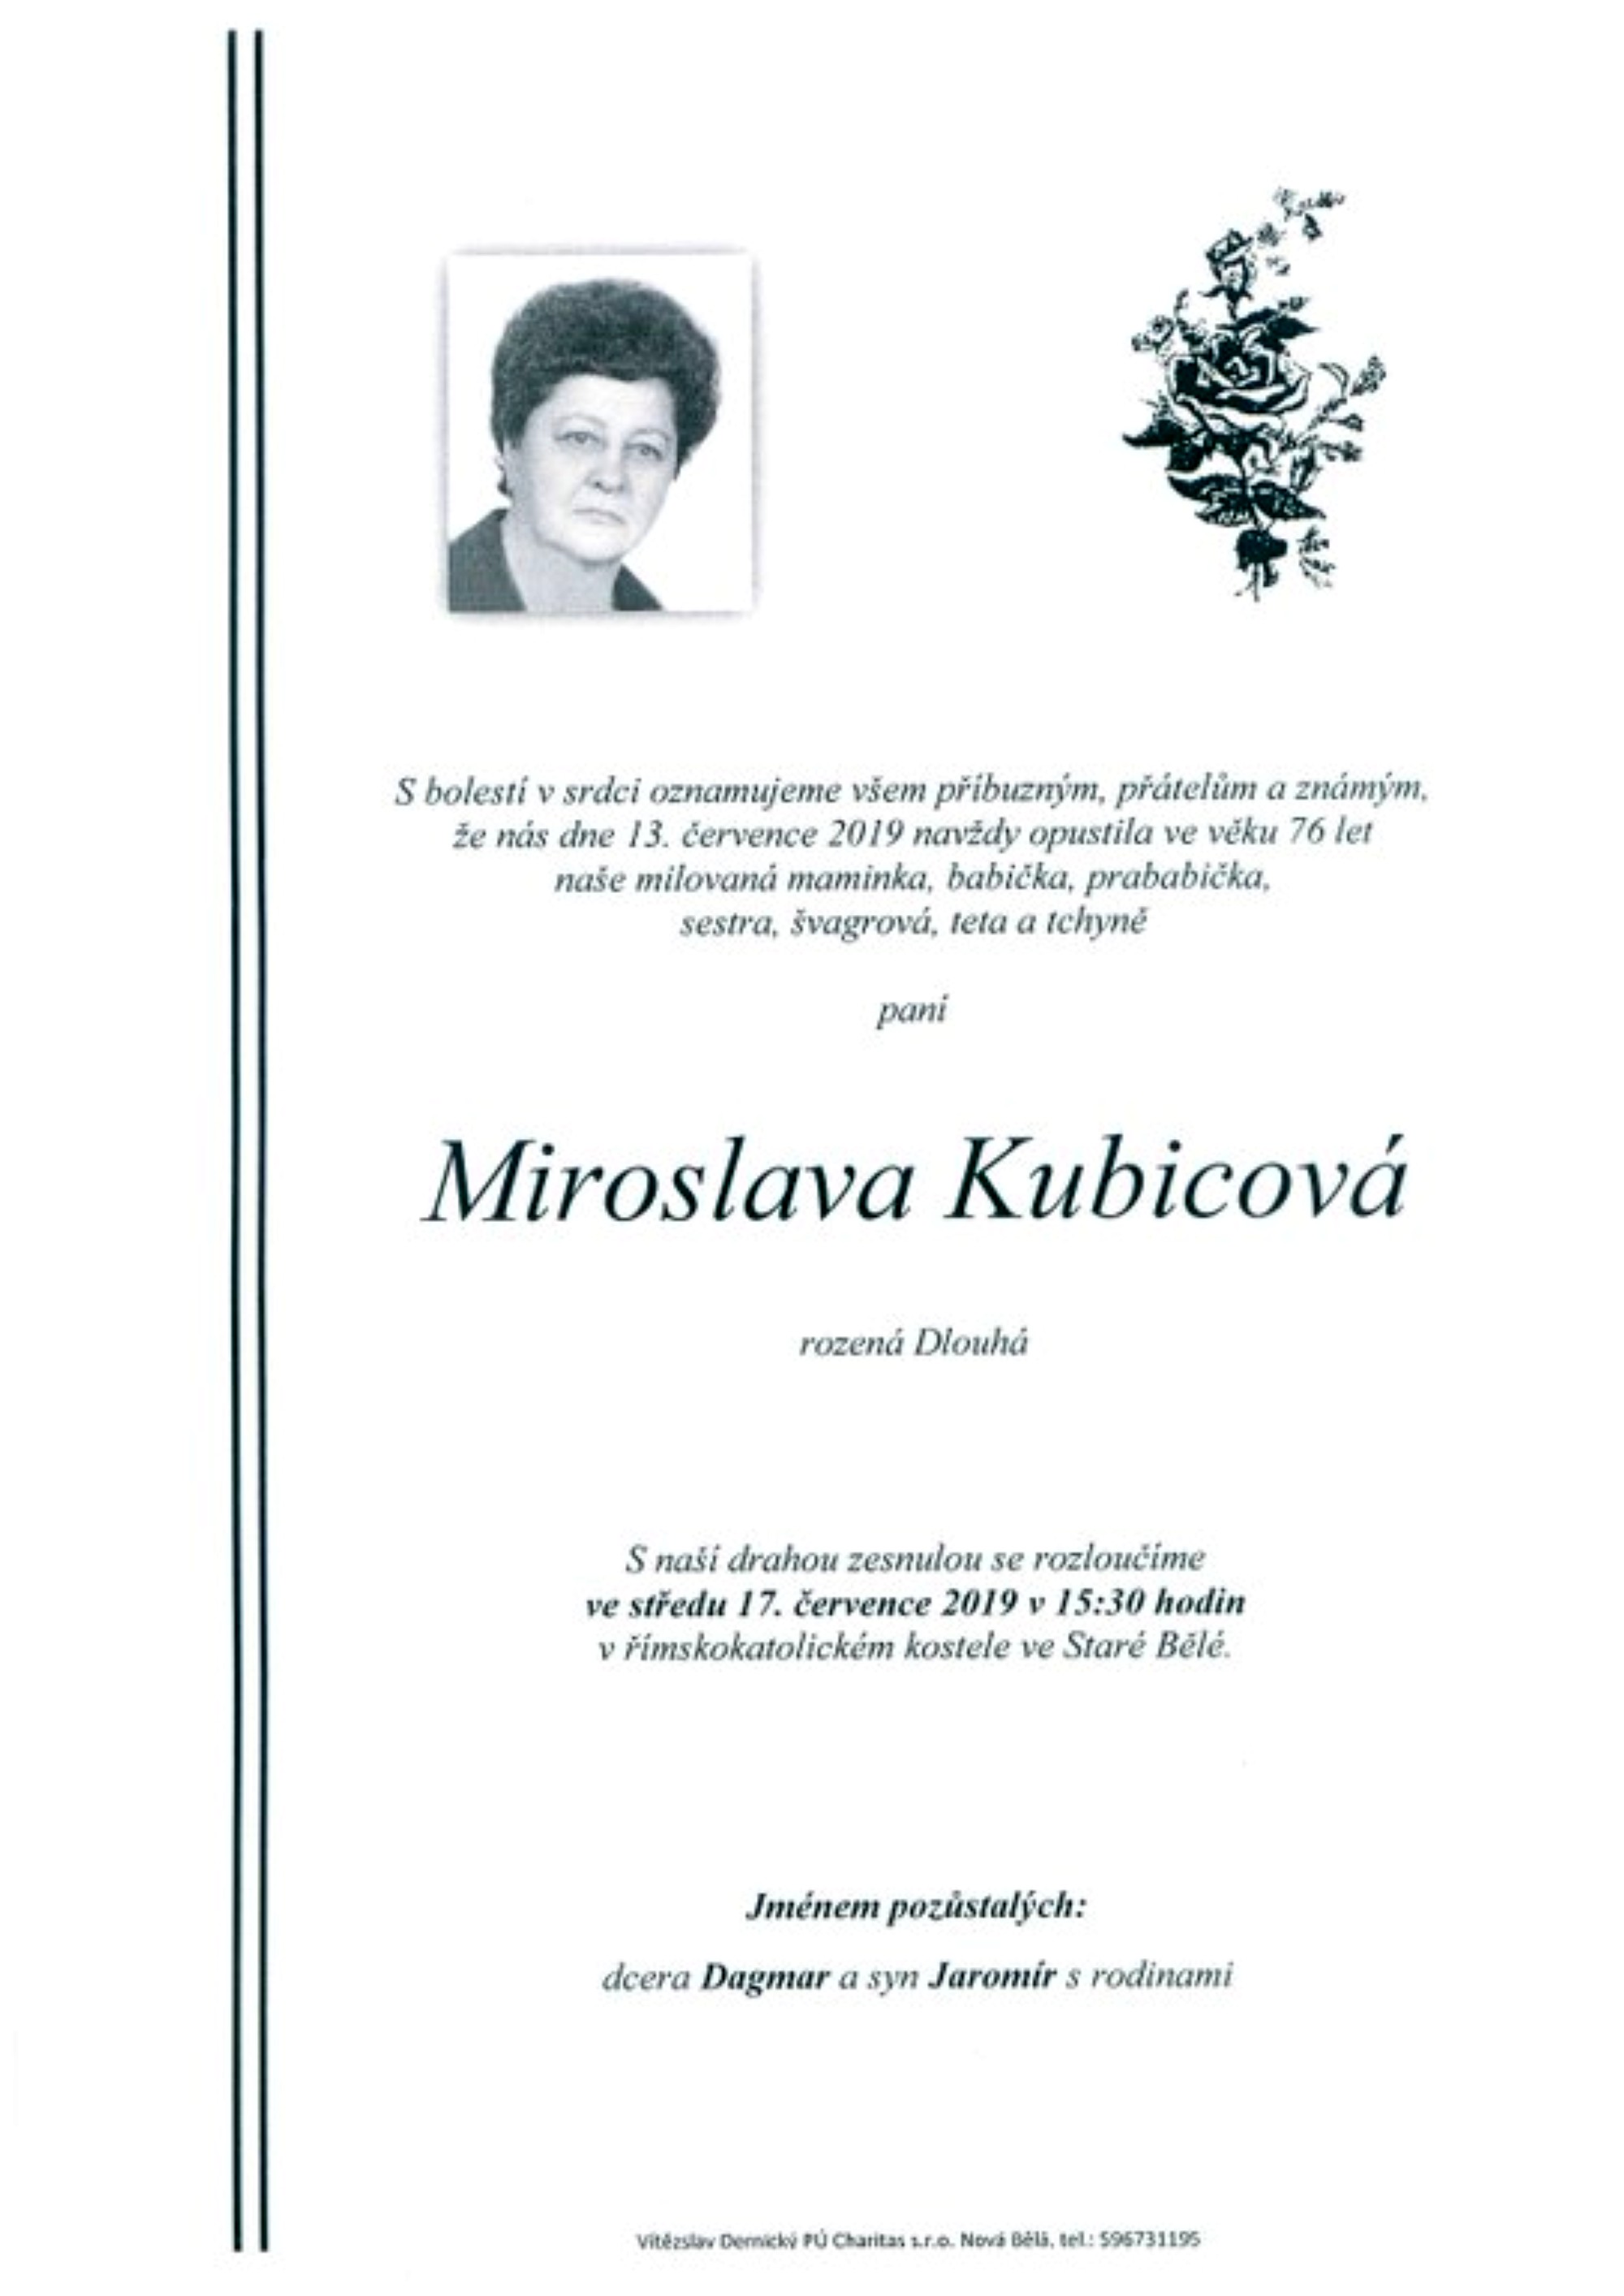 Miroslava Kubicová